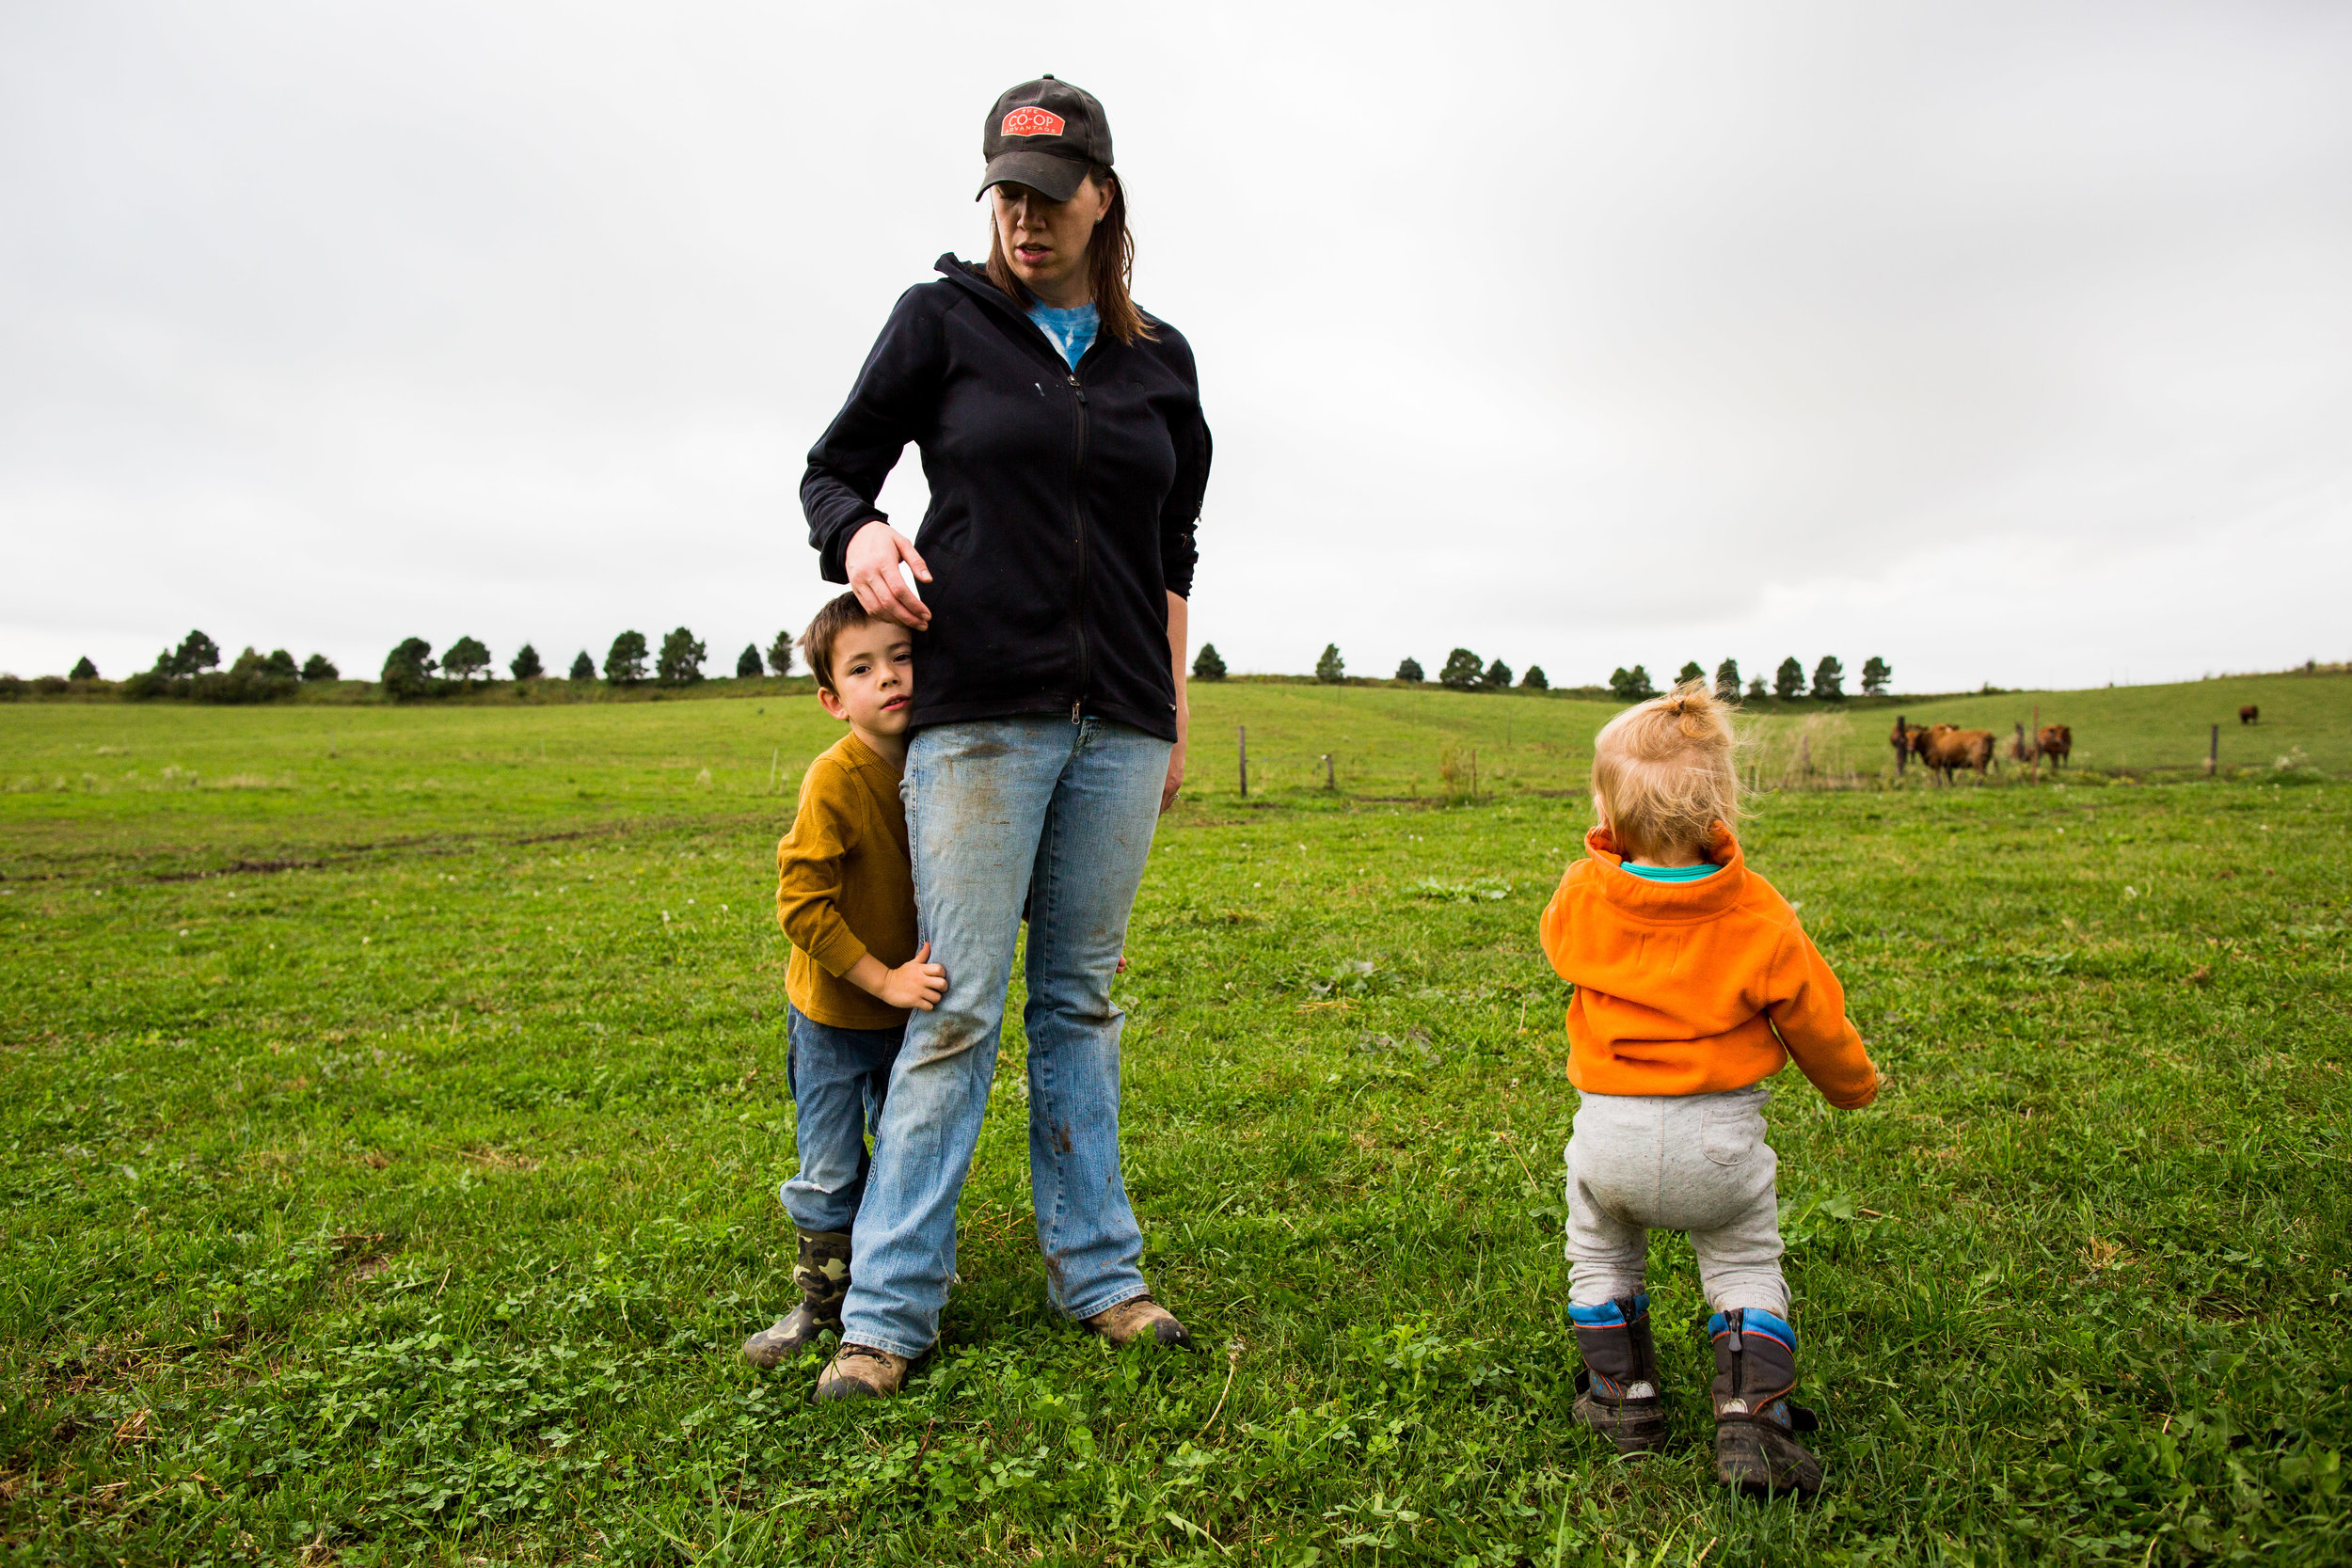 Raising her children on the multi-generational family farm